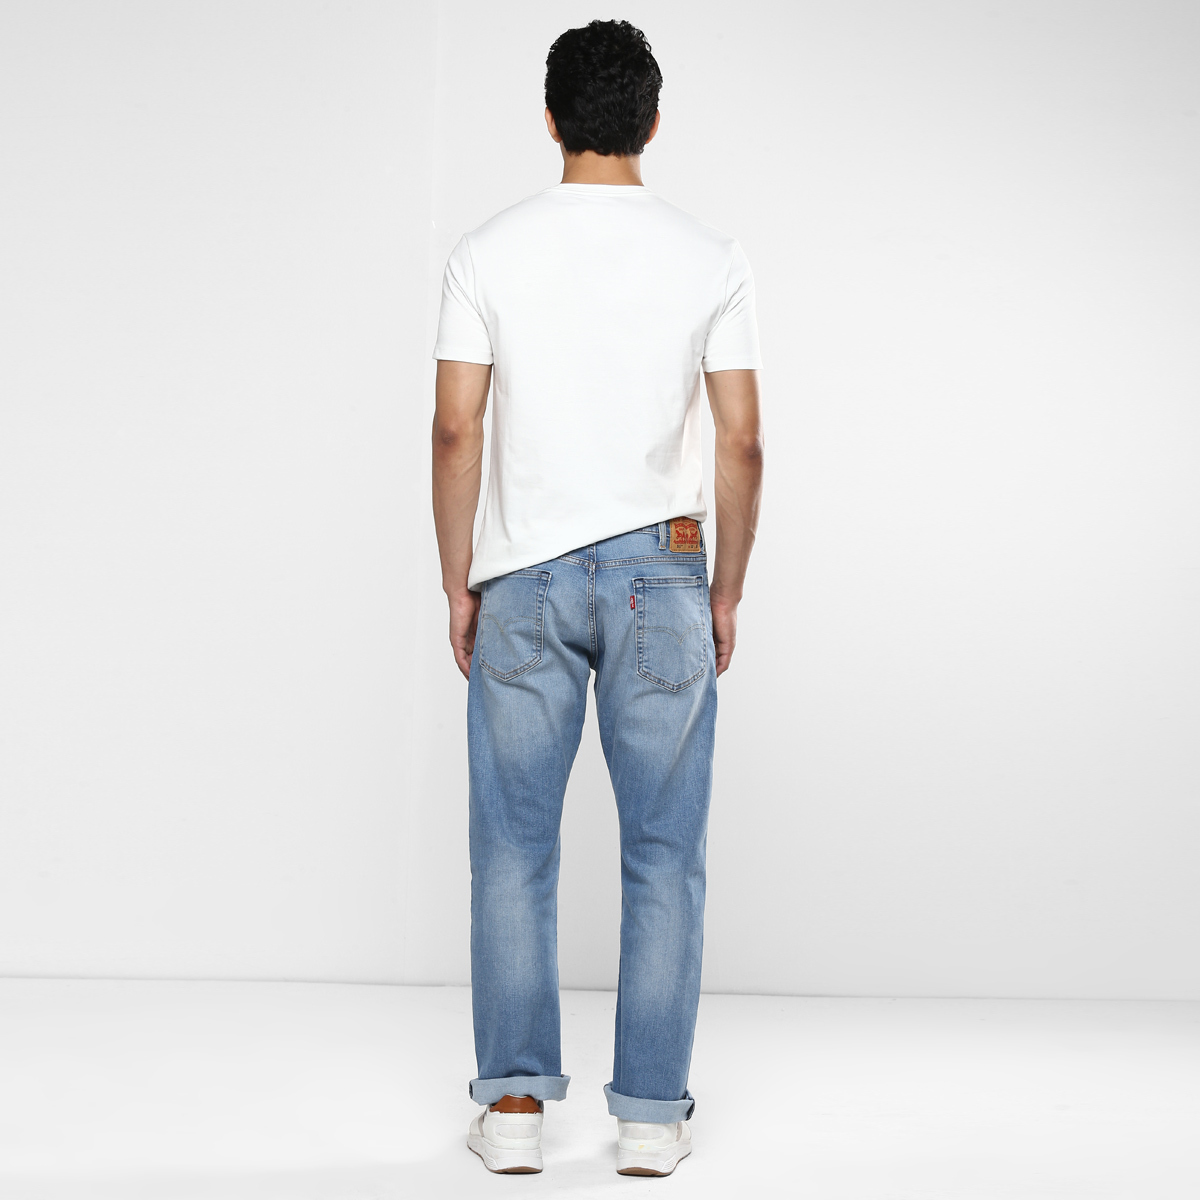 LEVIS MEN Single Length Jeans 16382-0007 Blue 34